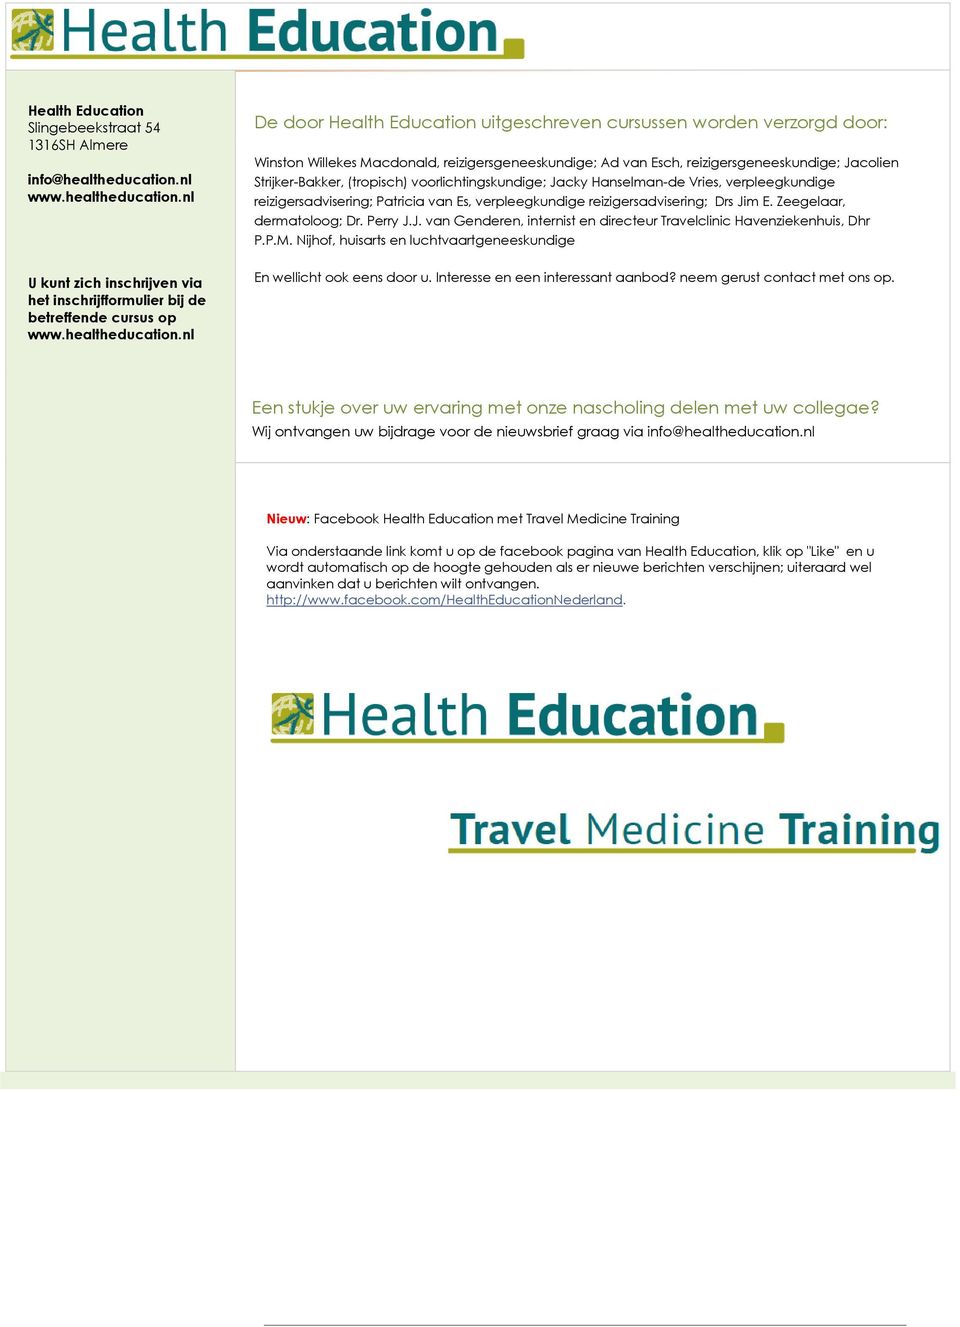 nl U kunt zich inschrijven via het inschrijfformulier bij de betreffende cursus op www.healtheducation.